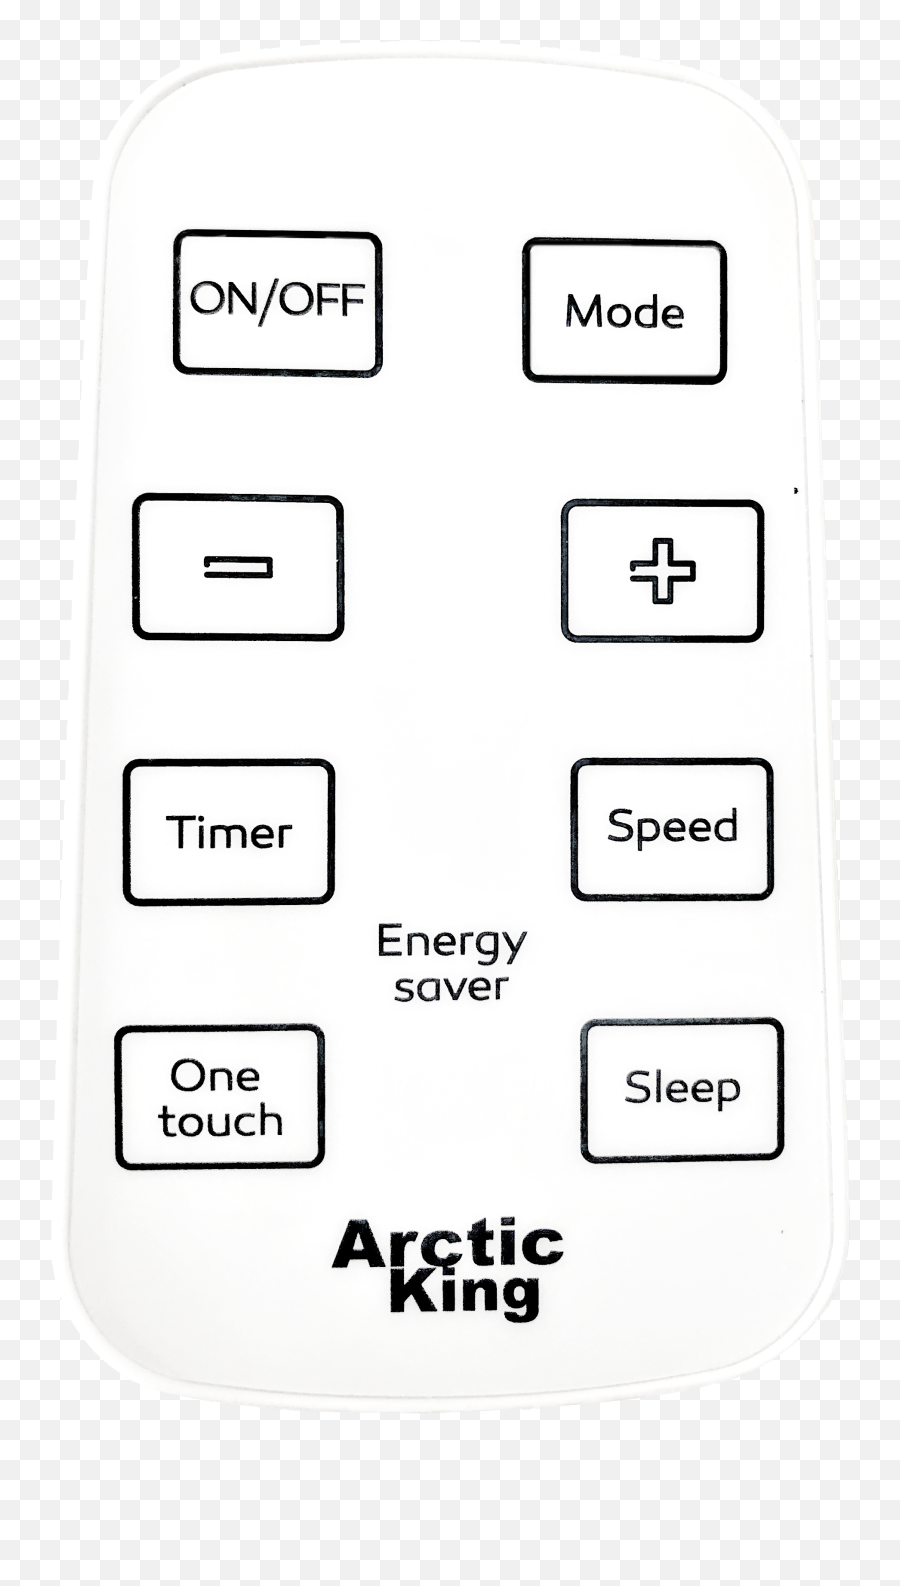 Arctic King 5000 Btu 115v Window Air Conditioner With Remote Wwk05cr01n Emoji,Xmen Emotion Control